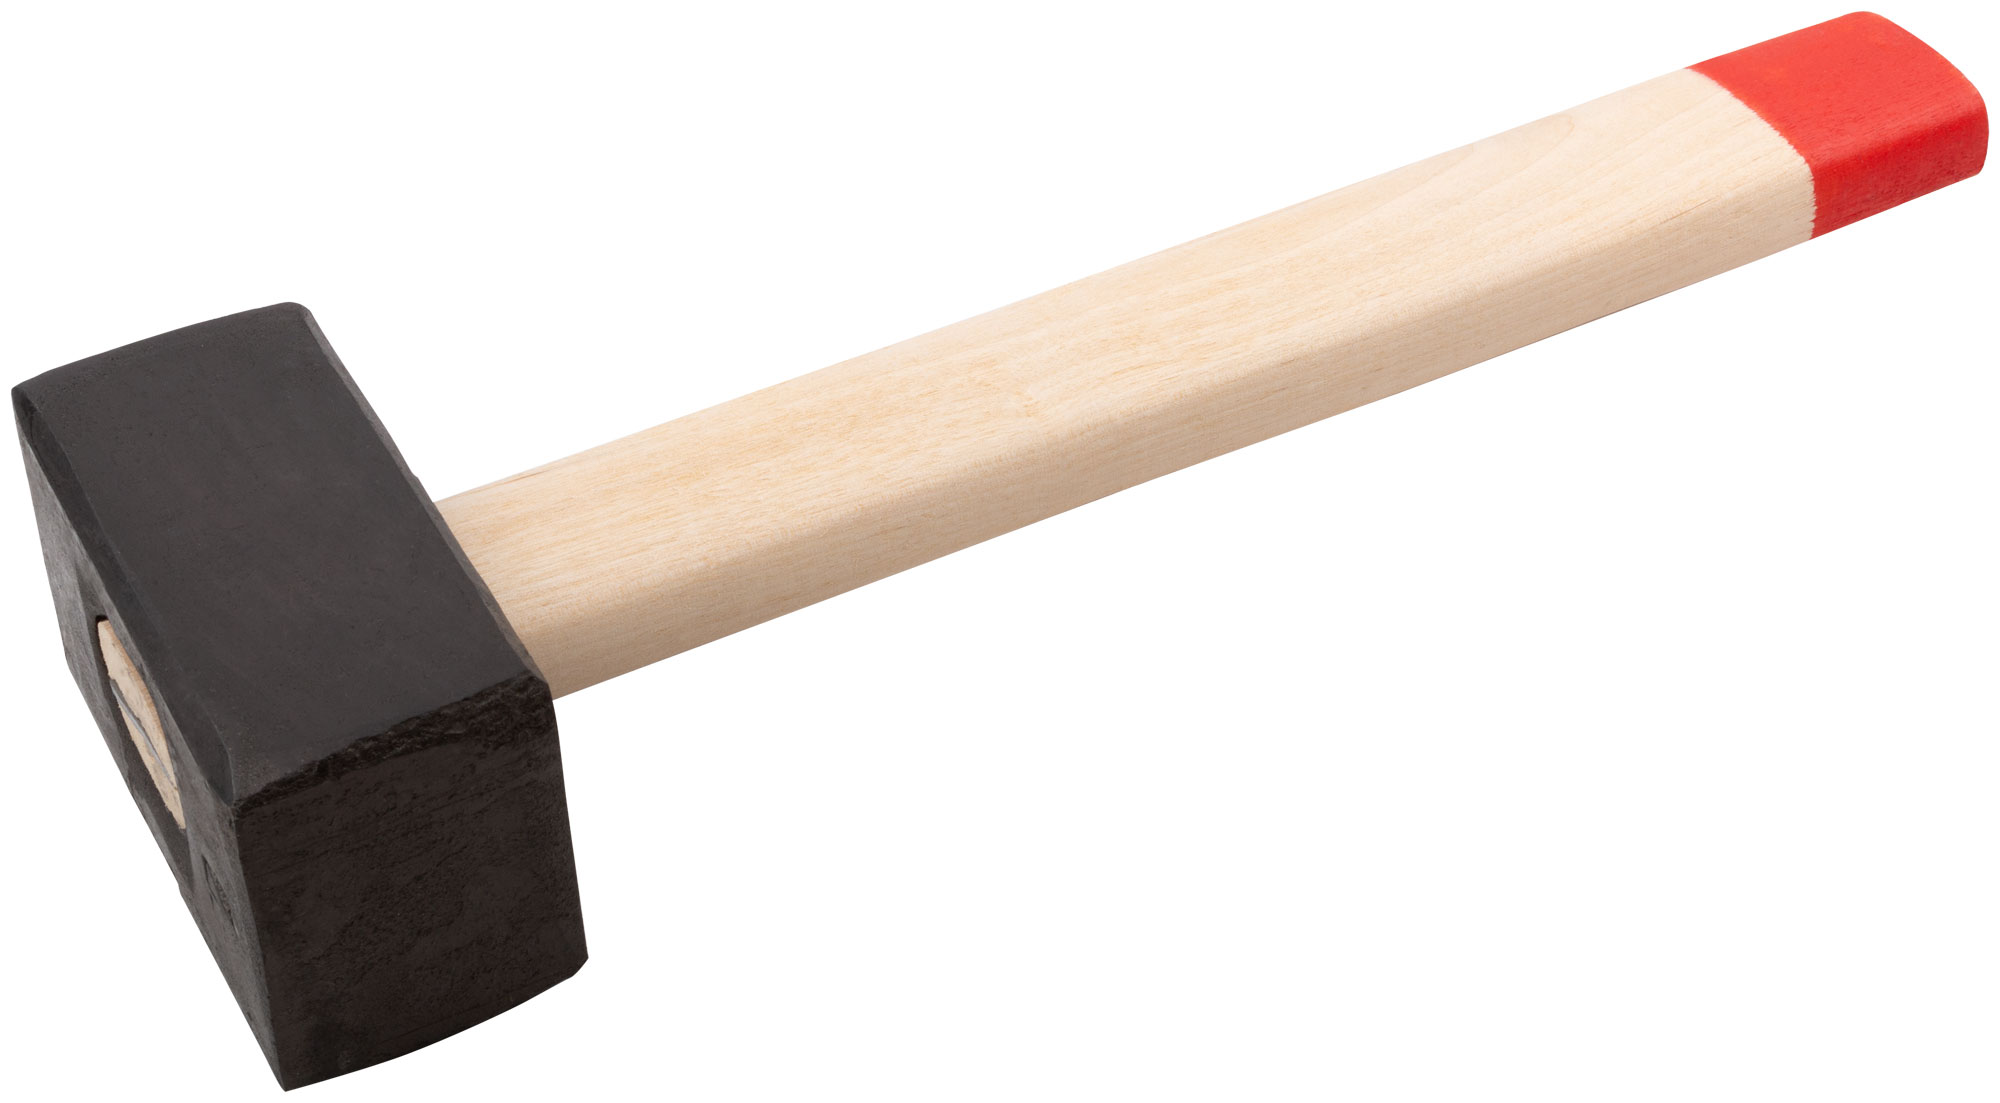 Кувалда кованая в сборе, деревянная ручка  4 кг